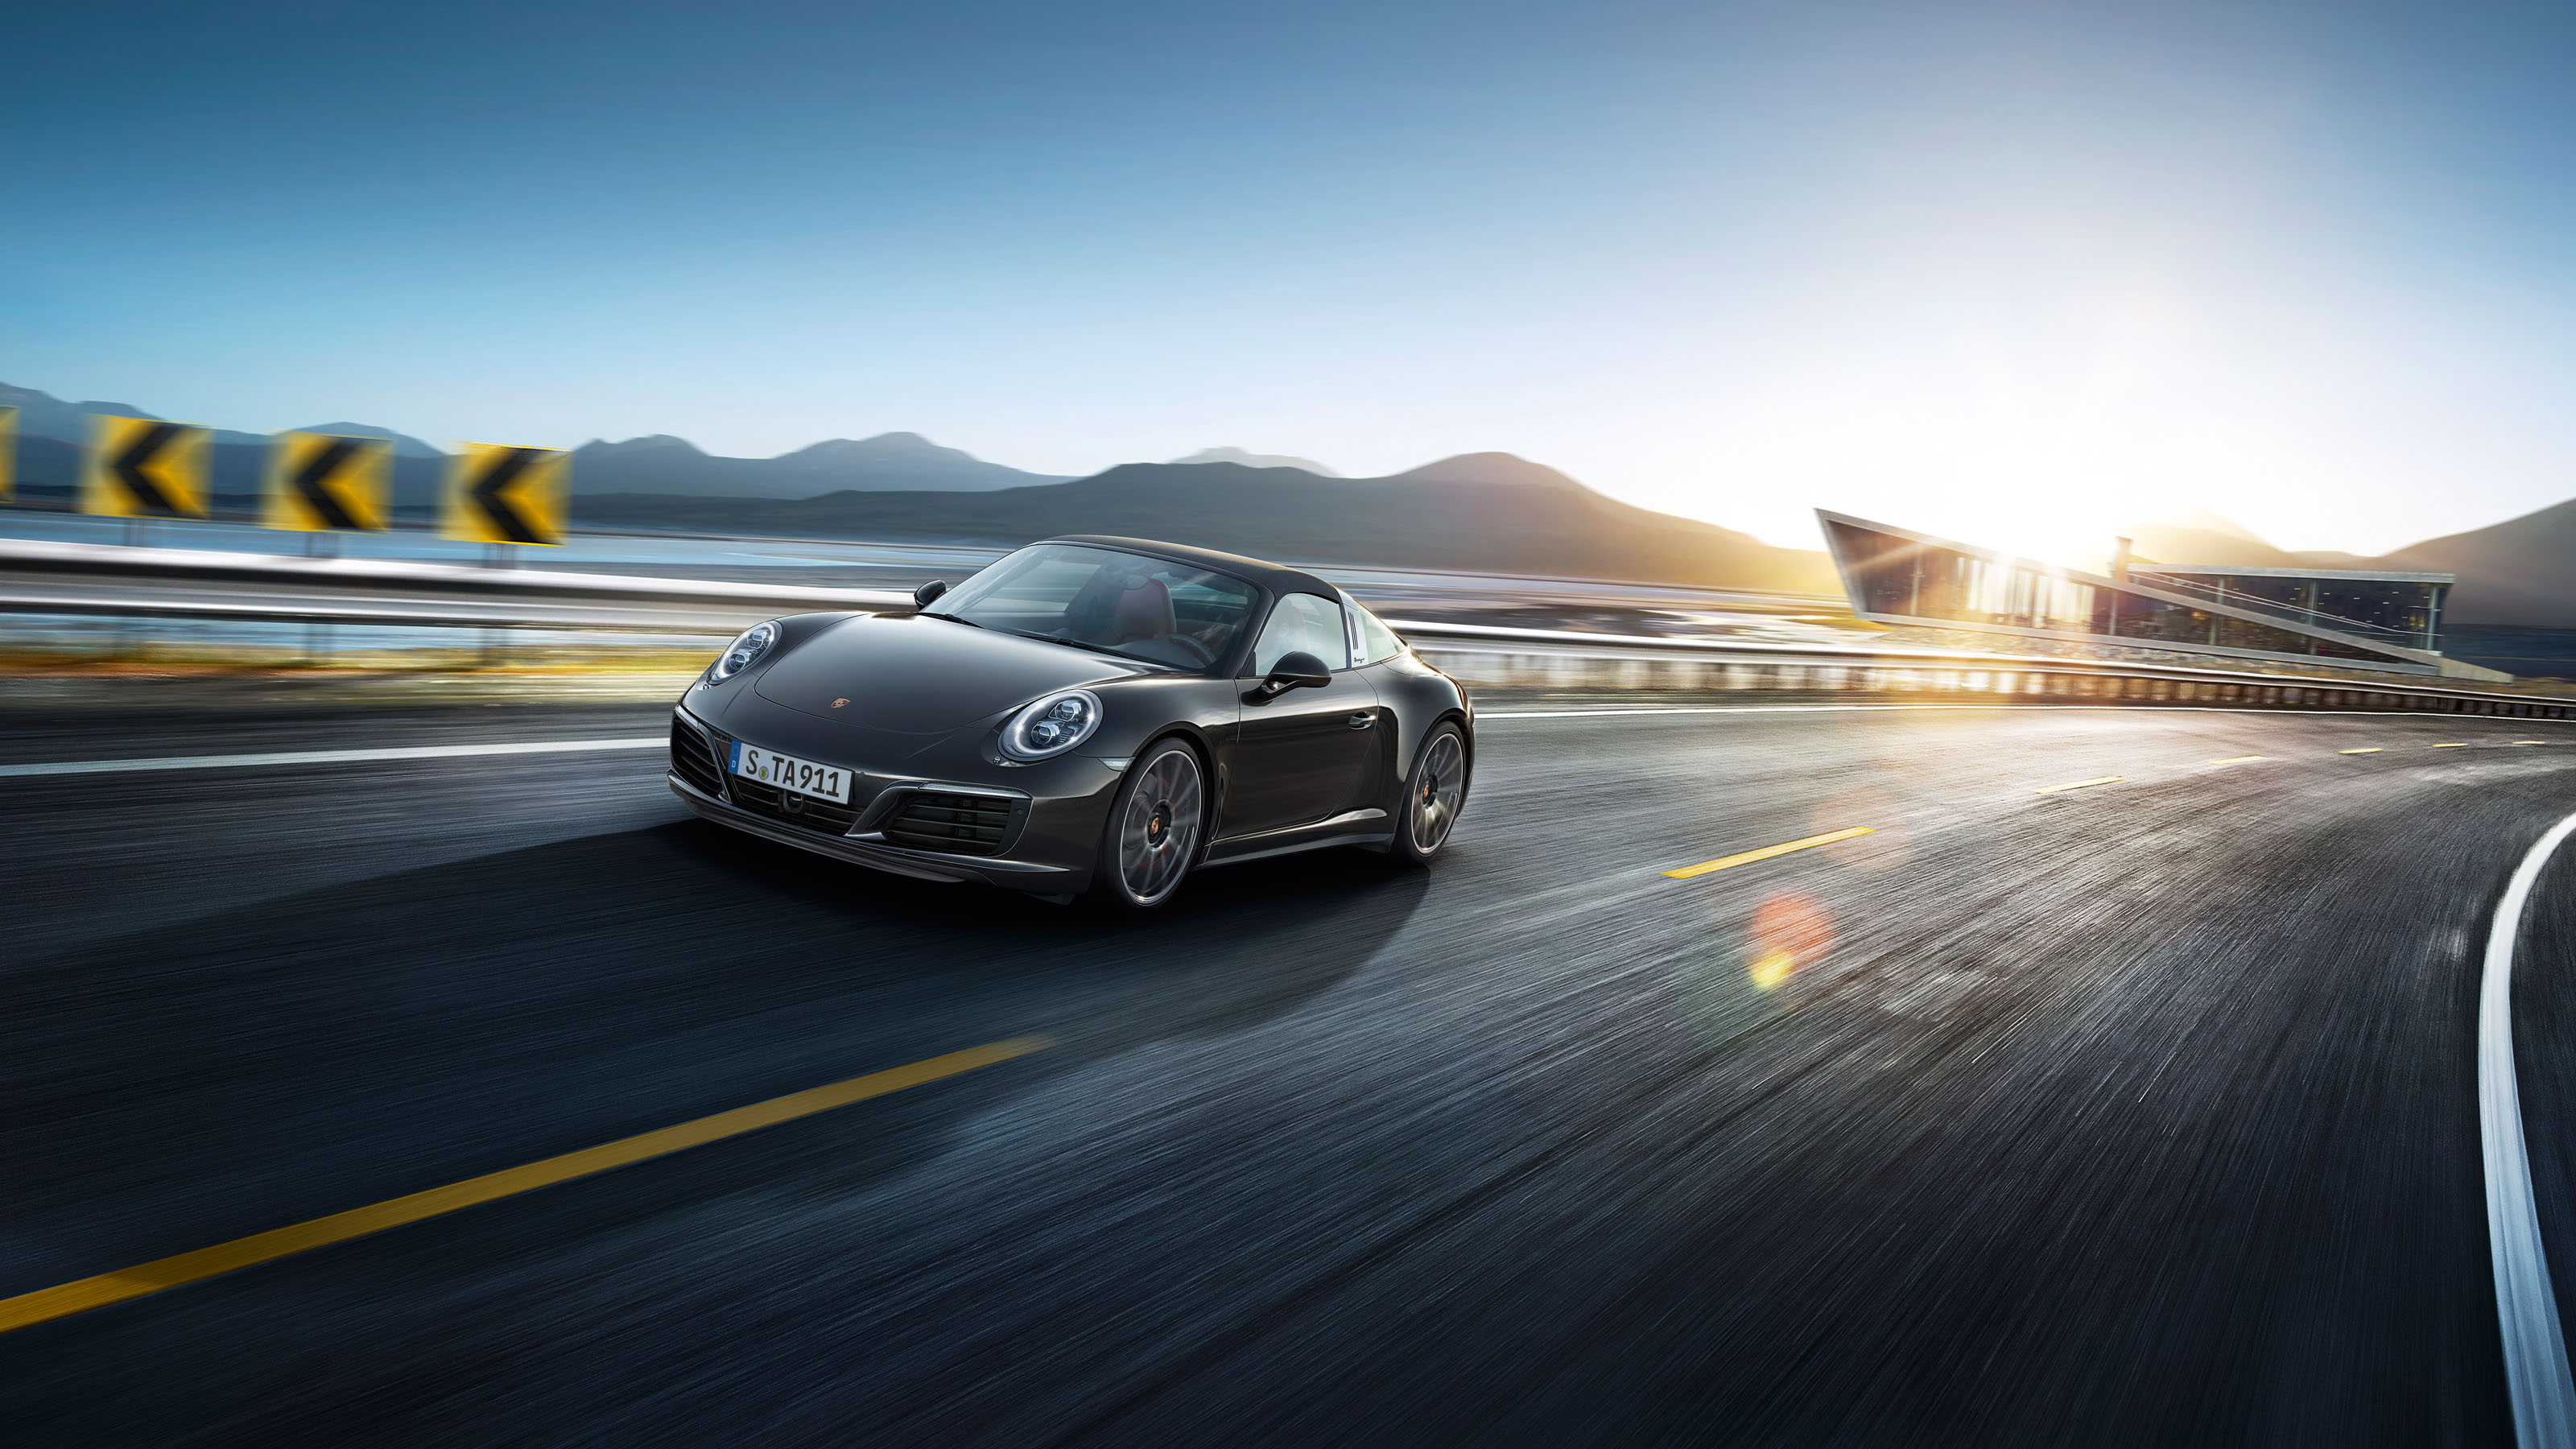 Download mobile wallpaper Porsche, Car, Porsche 911, Vehicles, Black Car, Porsche 911 Targa for free.